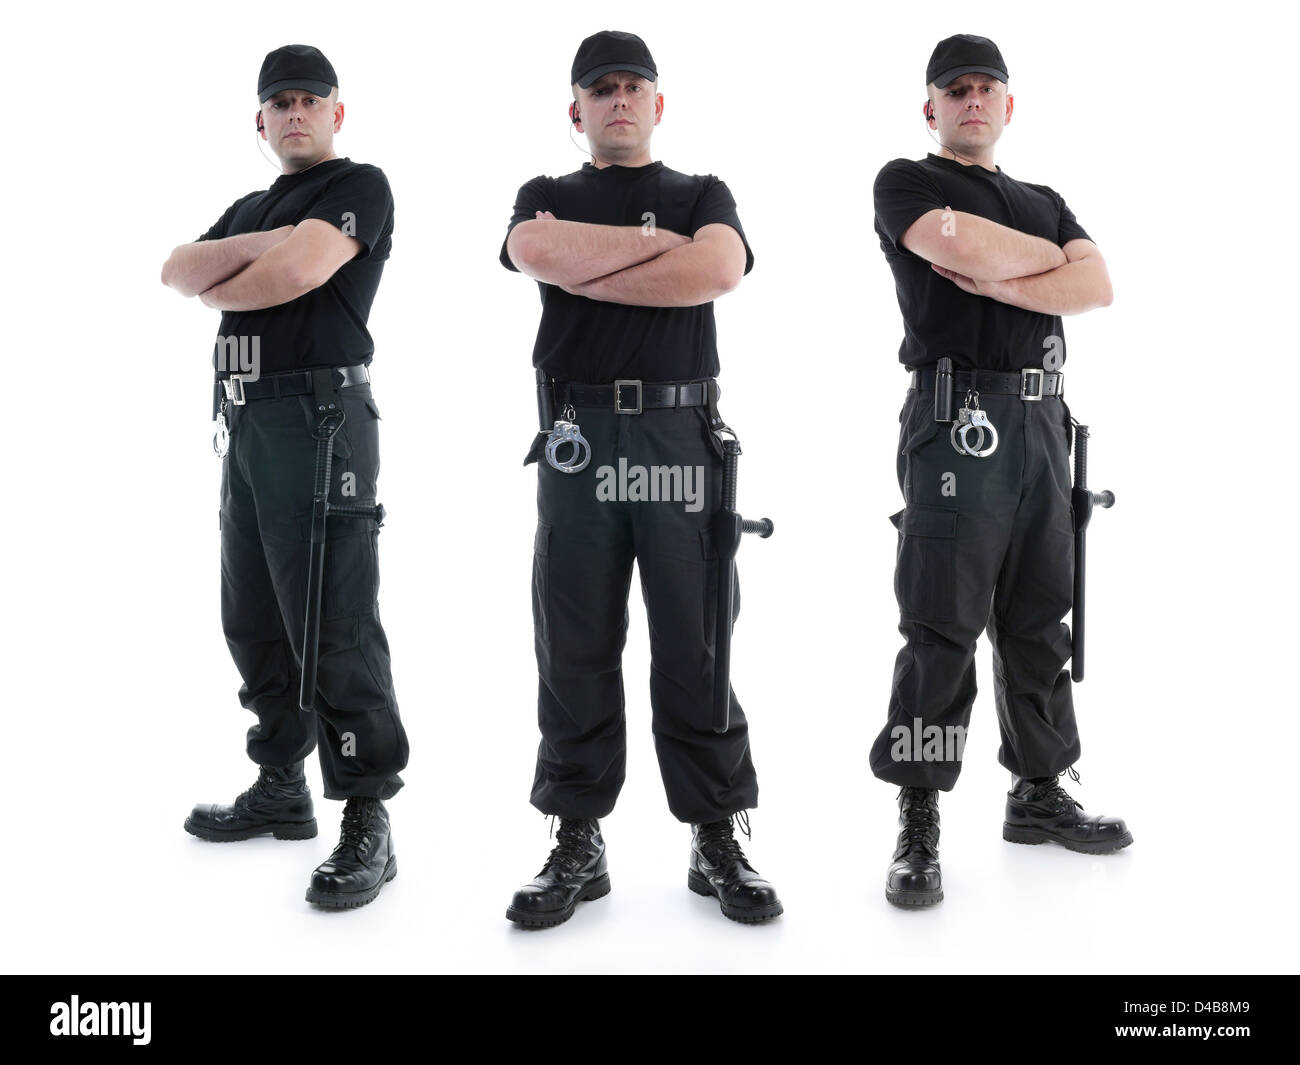 Drei Security-Männer tragen schwarze Uniform mit Polizei-Clubs und Handschellen stehen selbstbewusst mit verschränkten Armen ausgestattet Stockfoto